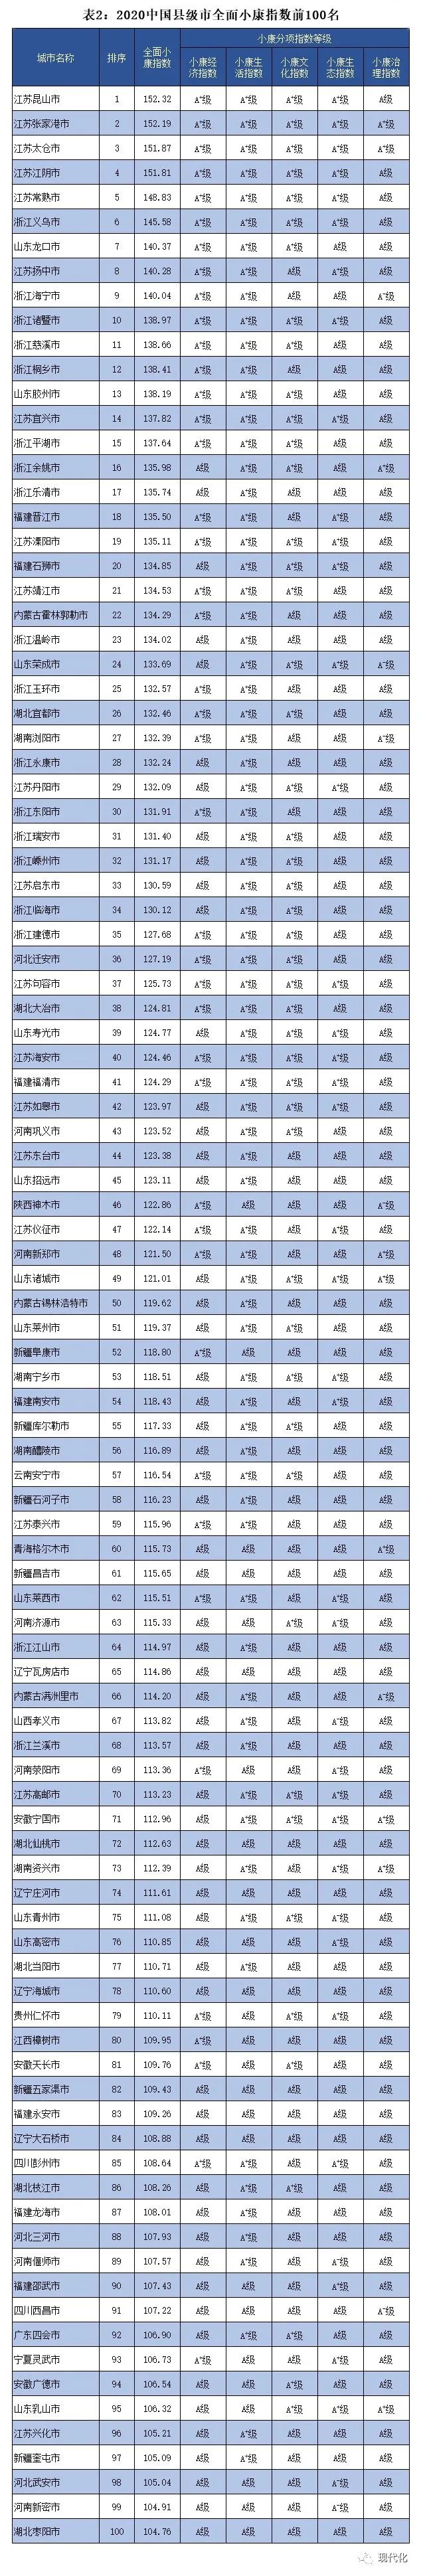 2020百强区排名东营_2020年中国工业百强县(市)名单发布,东营广饶上榜!